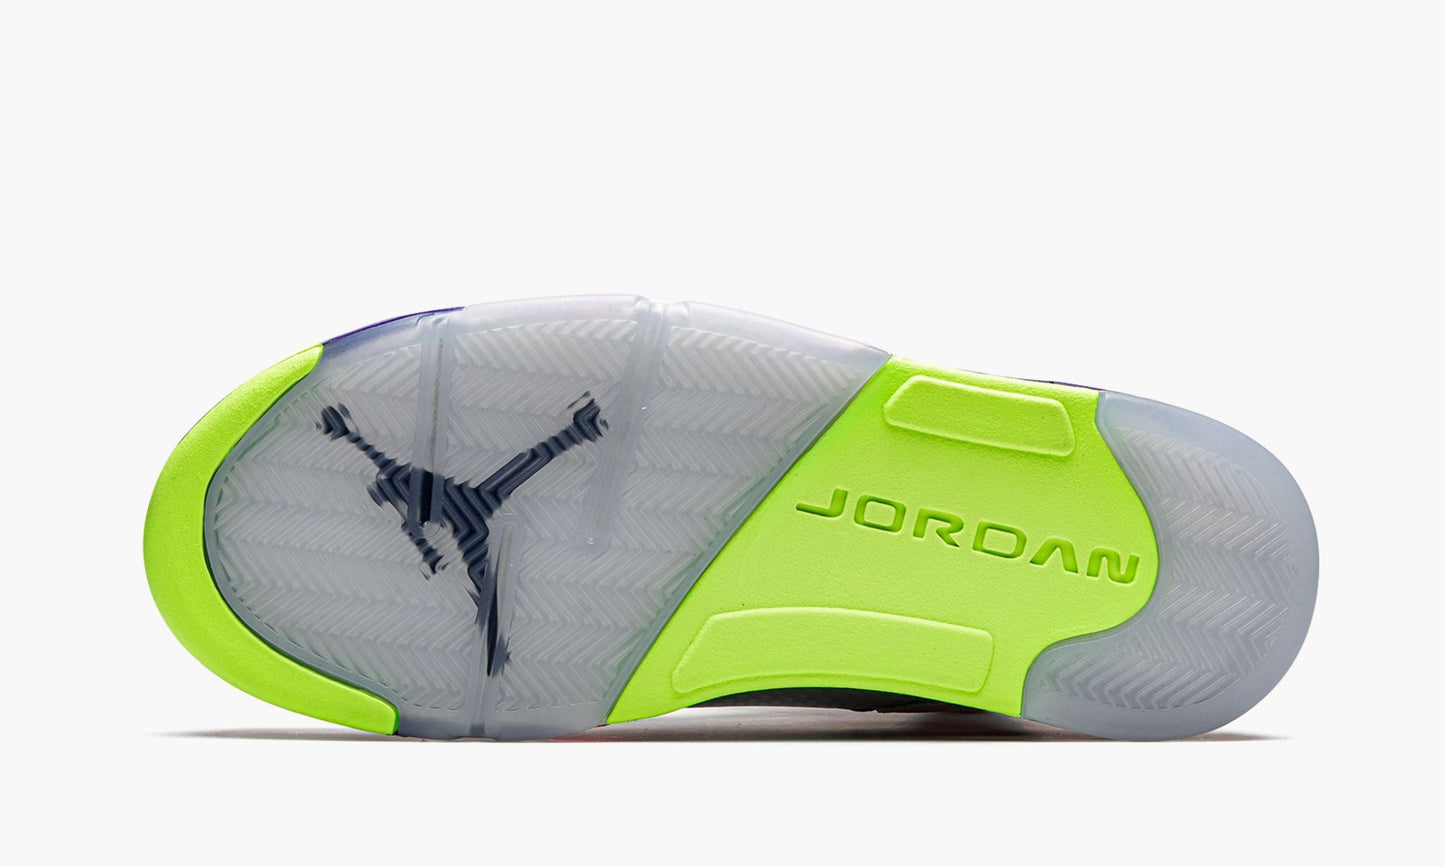 Air Jordan 5 Retro "Alternate Bel-Air"